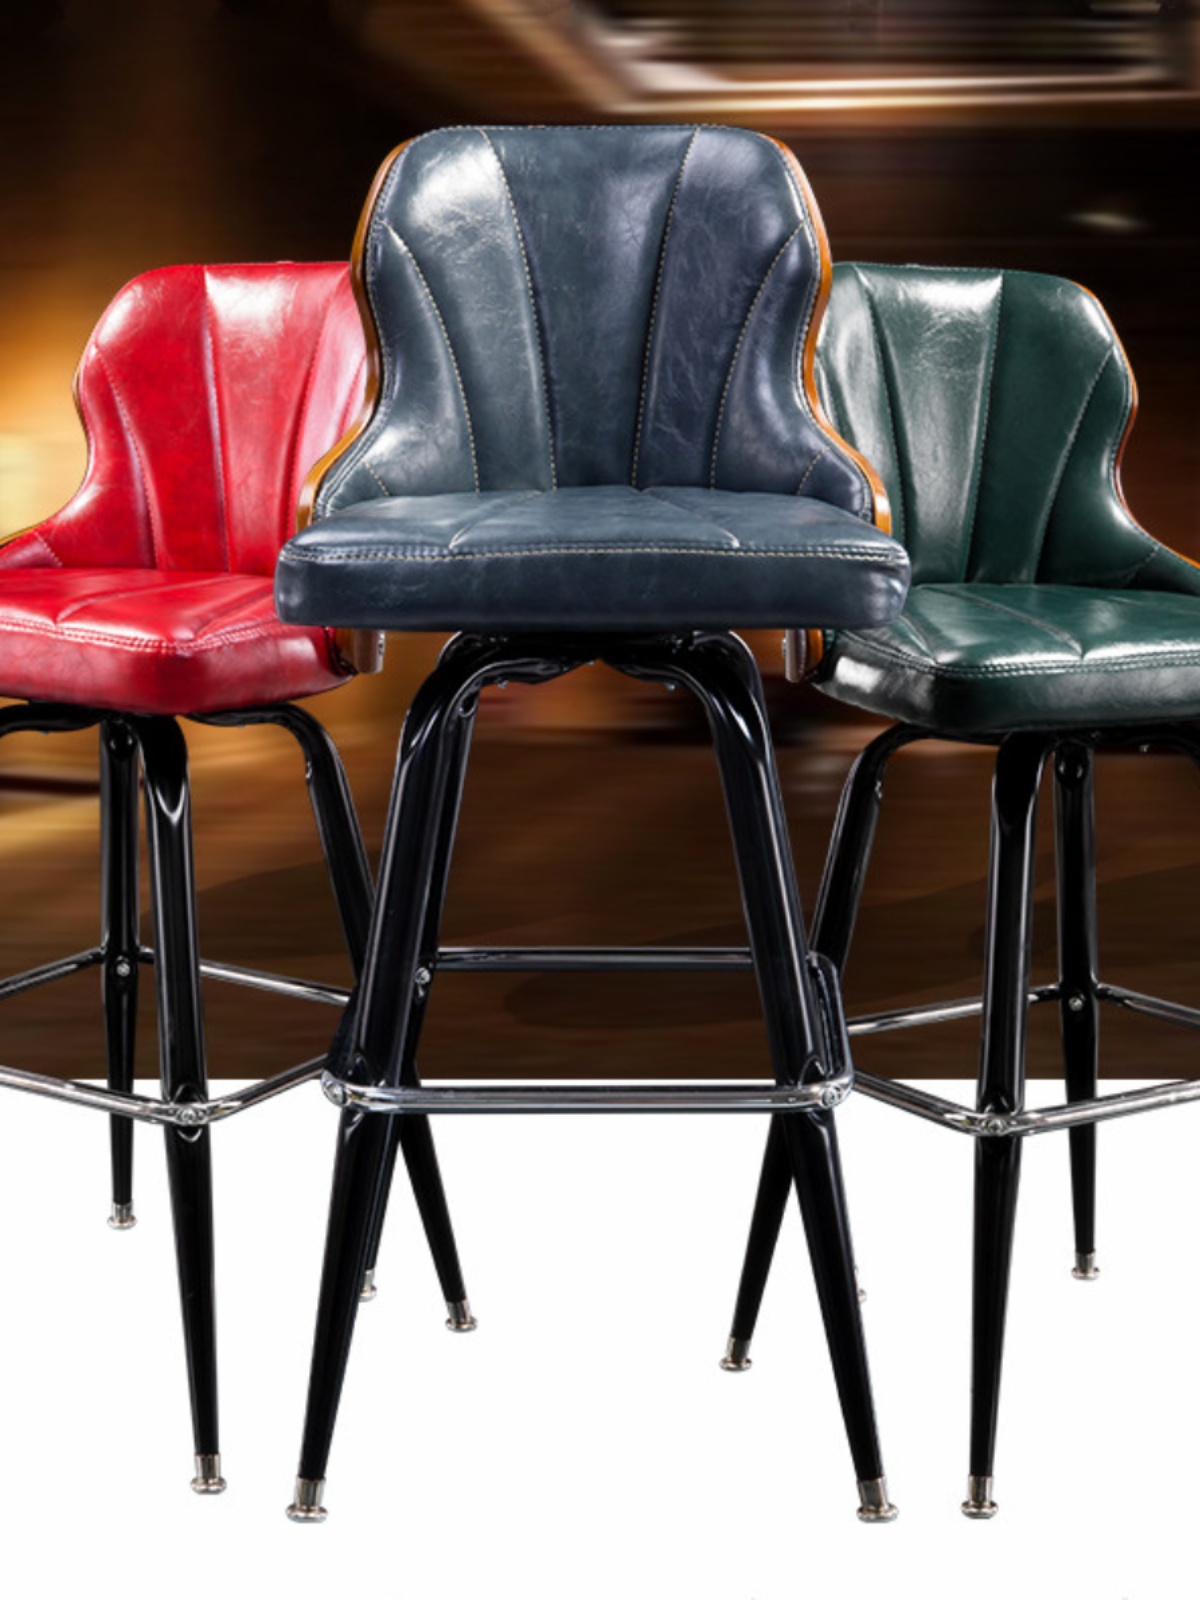 简约欧式酒吧椅子铁艺吧台椅创意时尚实木高脚椅旋转休闲椅咖啡厅